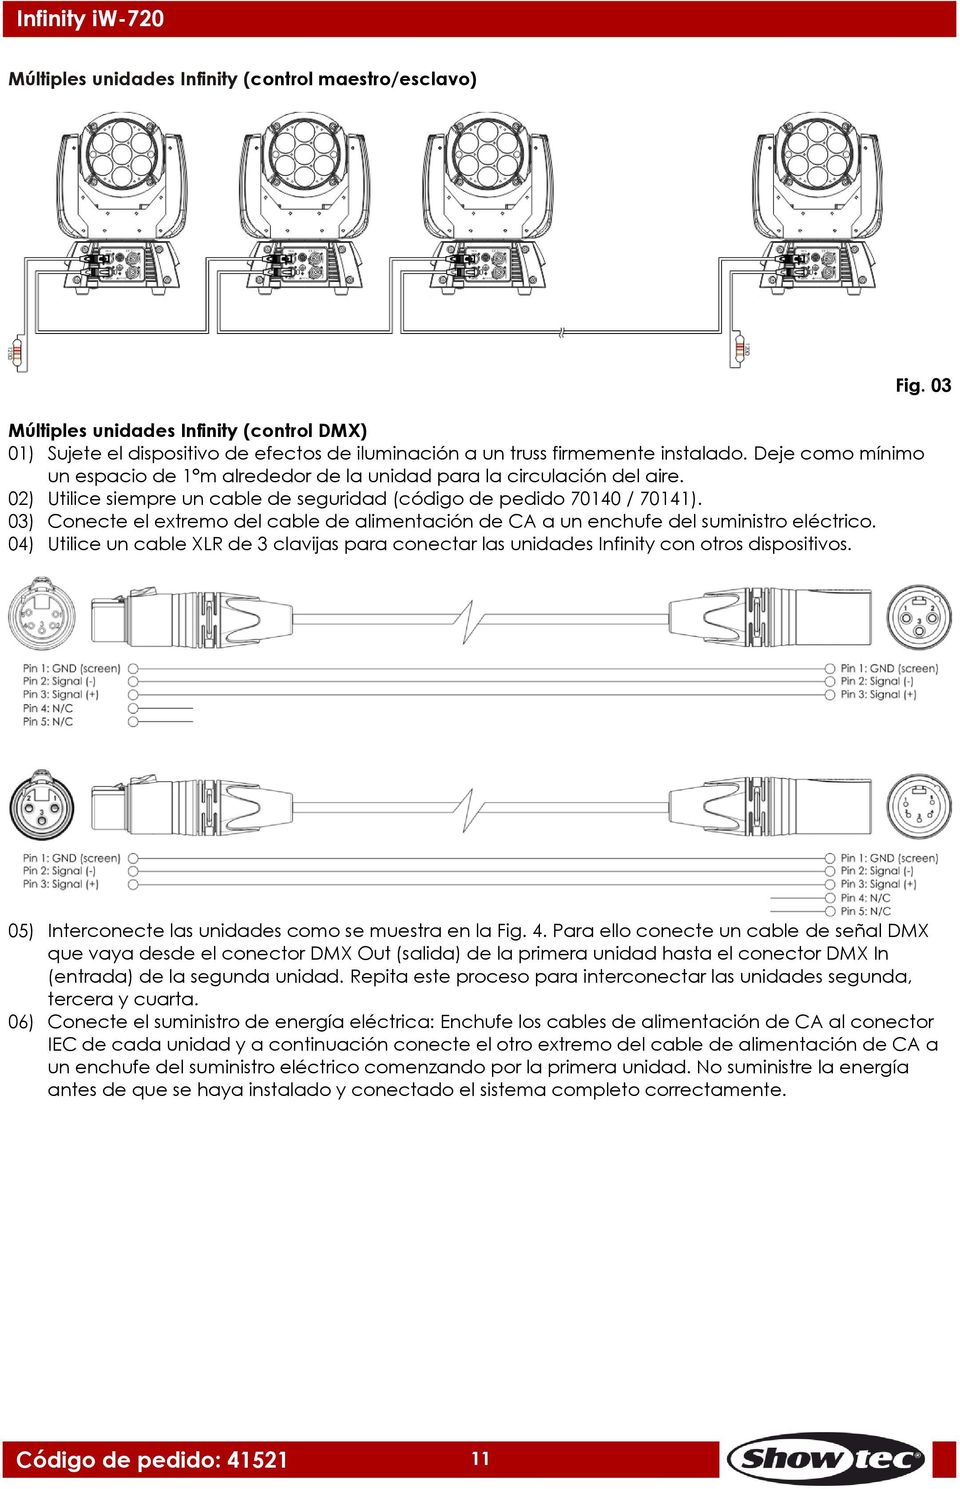 03) Conecte el extremo del cable de alimentación de CA a un enchufe del suministro eléctrico. 04) Utilice un cable XLR de 3 clavijas para conectar las unidades Infinity con otros dispositivos. Fig.